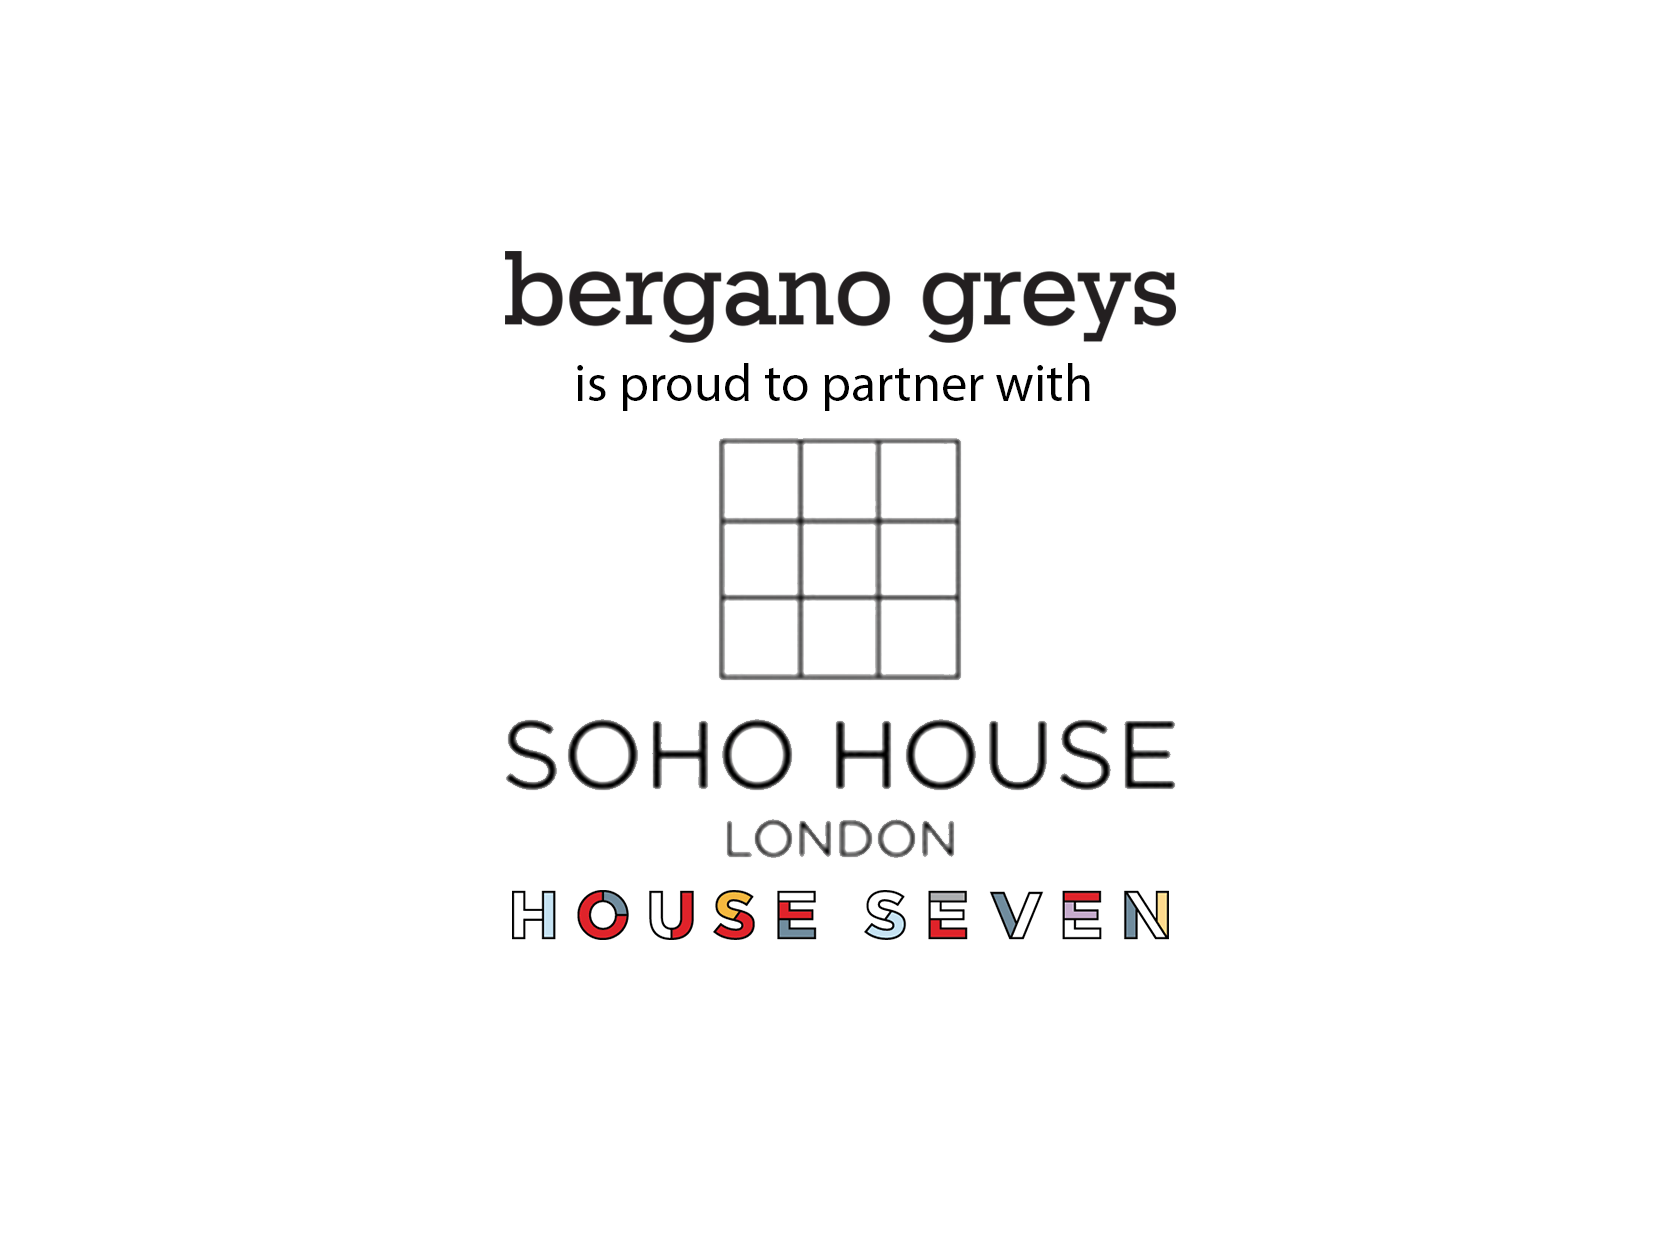 Grey's Logo - bergano greys logo a team leading and a partner of soho house ...